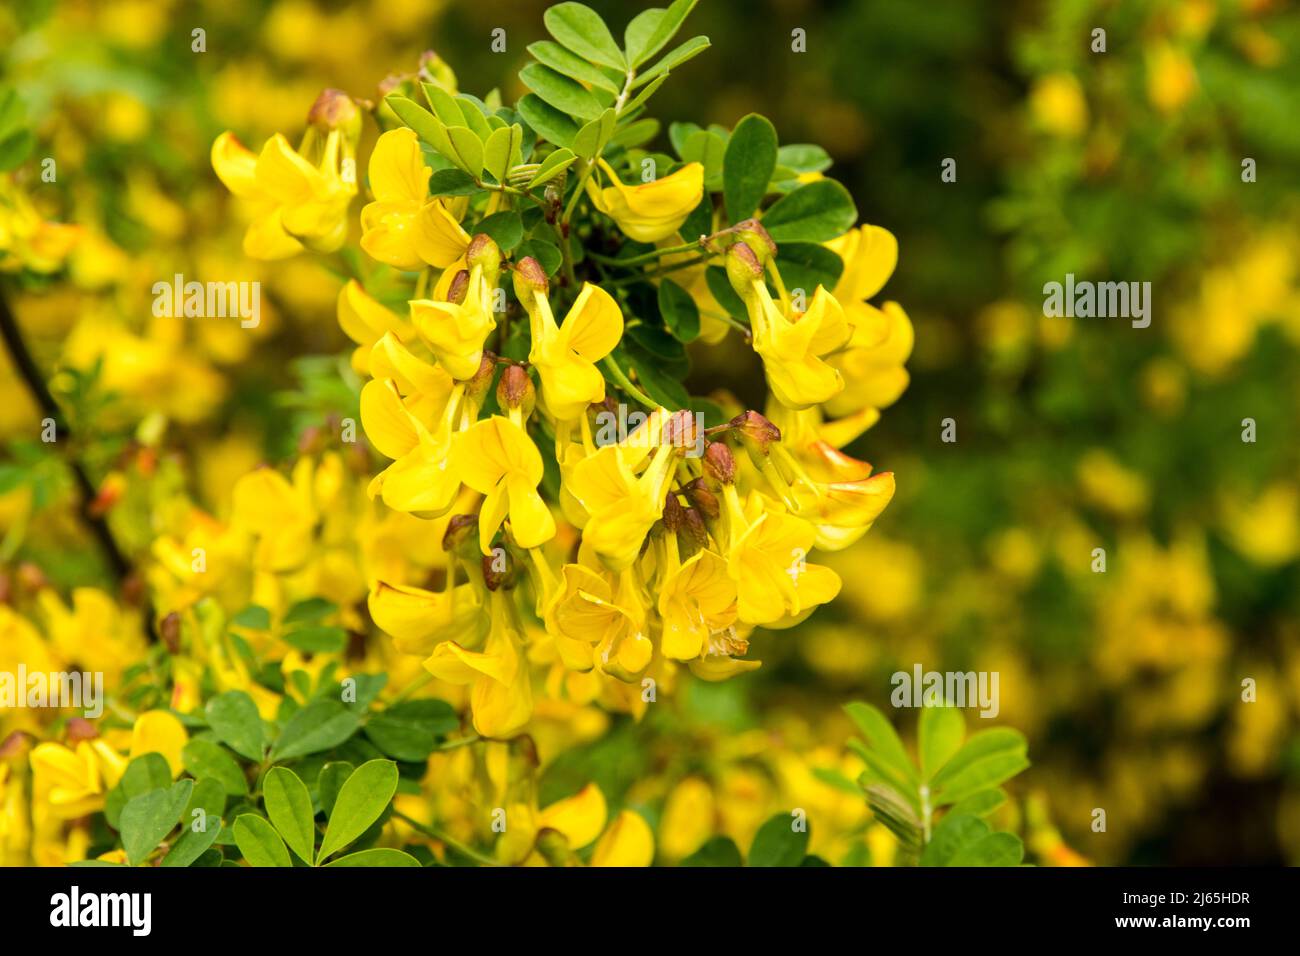 The shrub Hippocrepis emerus in full flower Stock Photo